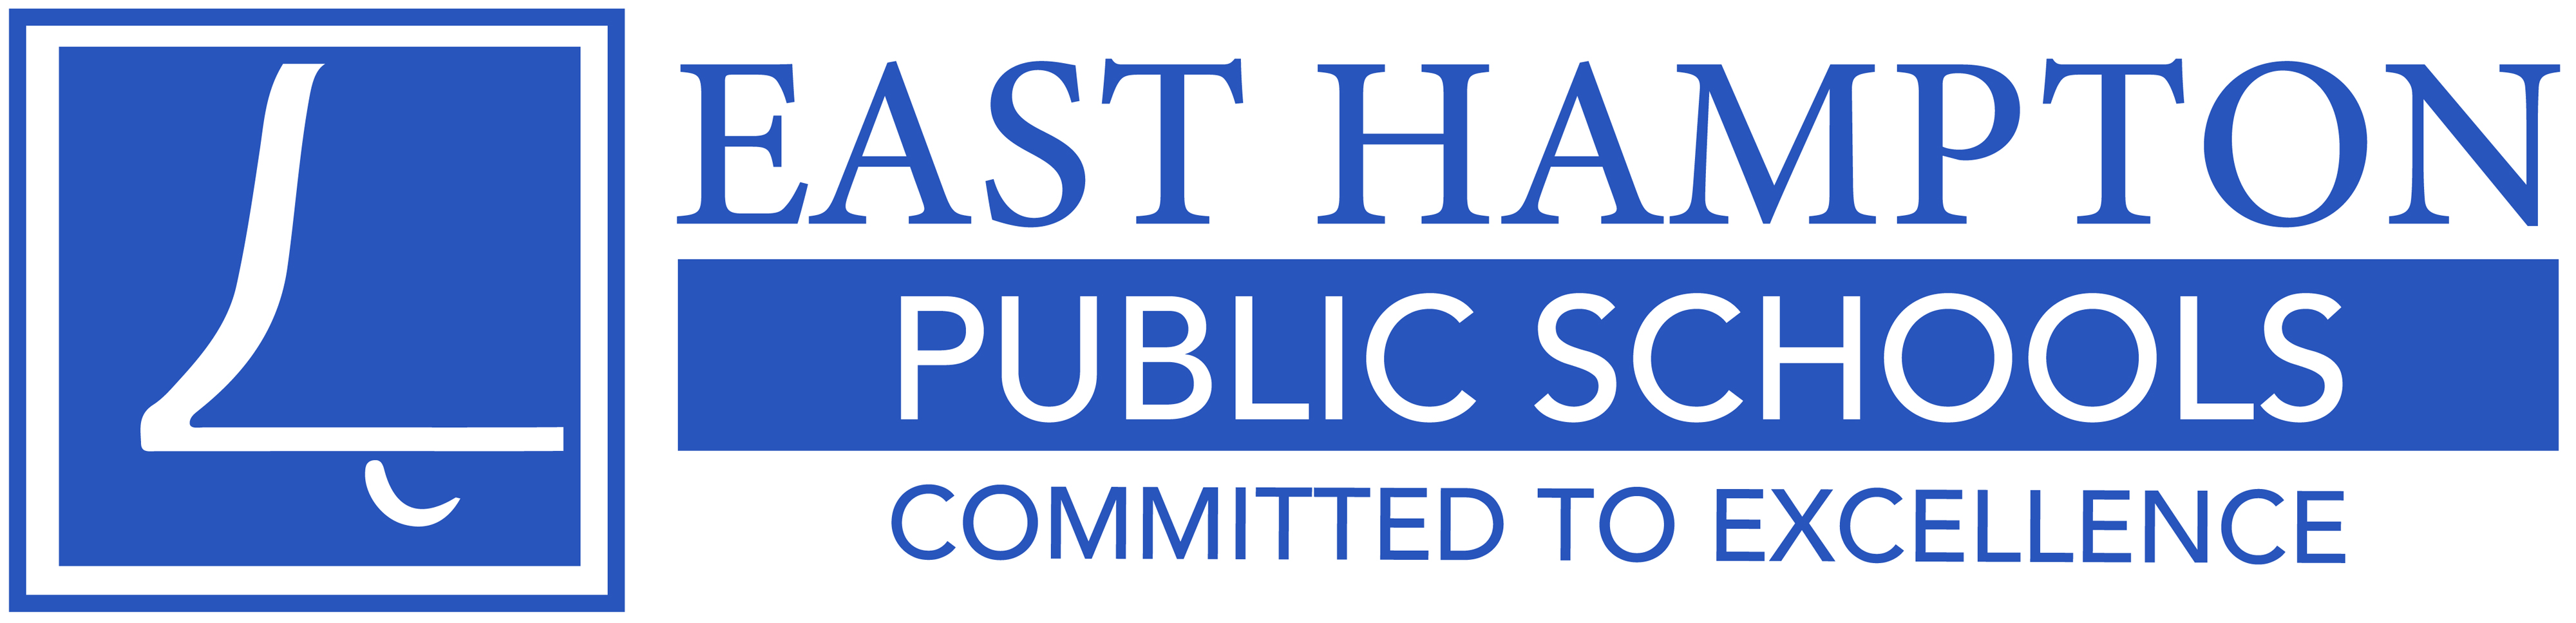 East Hampton Public Schools